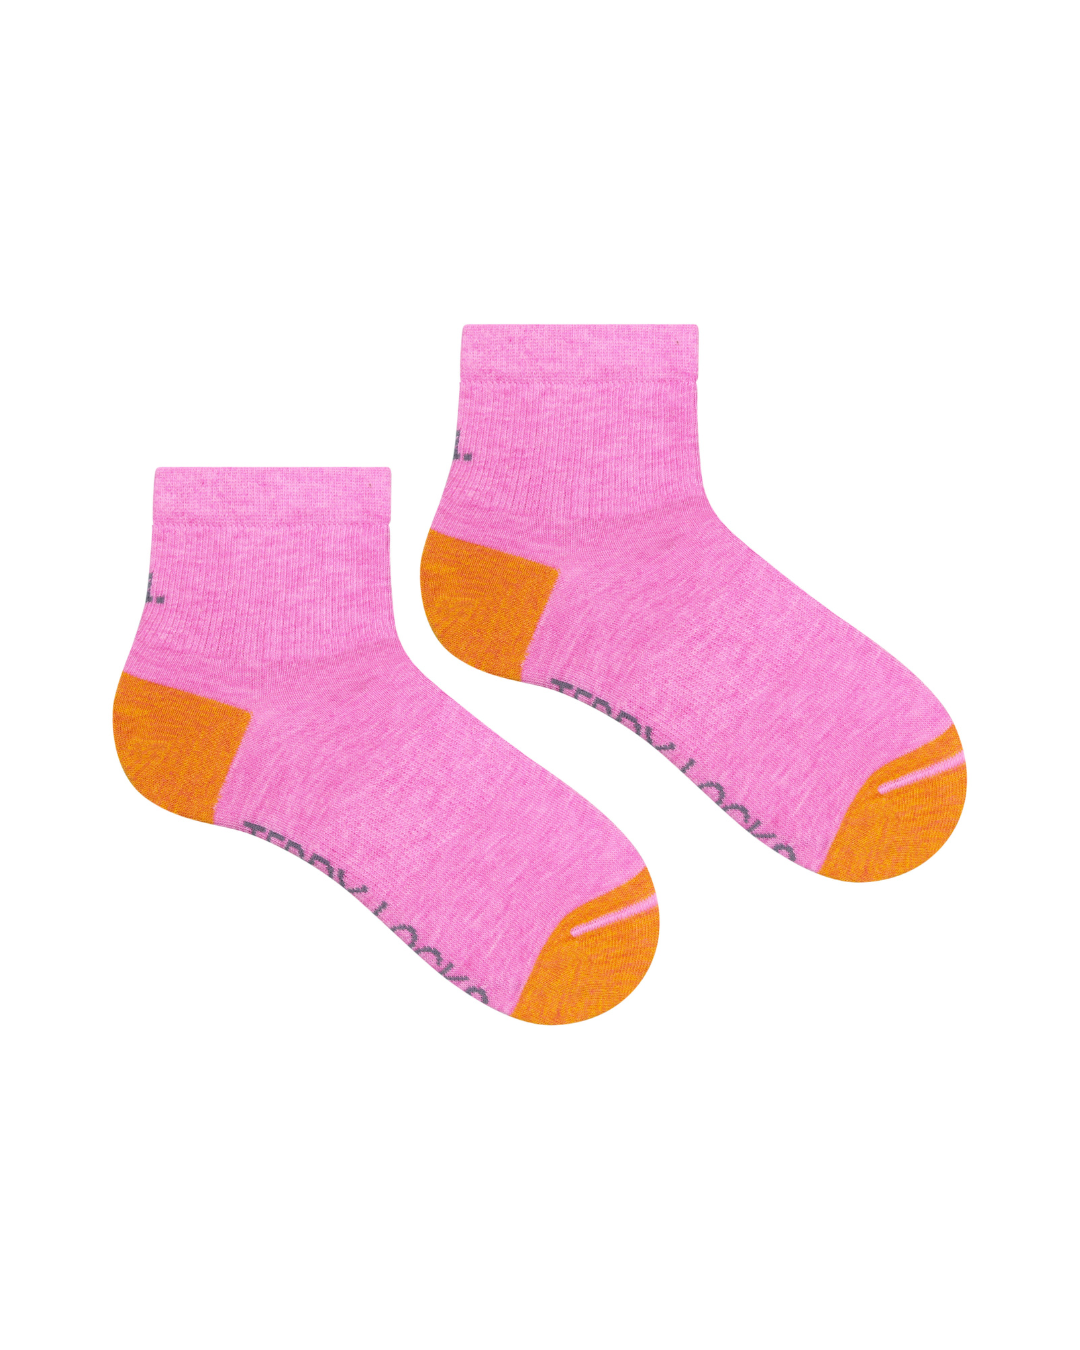 Pink quarter length sock. Sport sock, athletic sock, ankle length sustainable sock